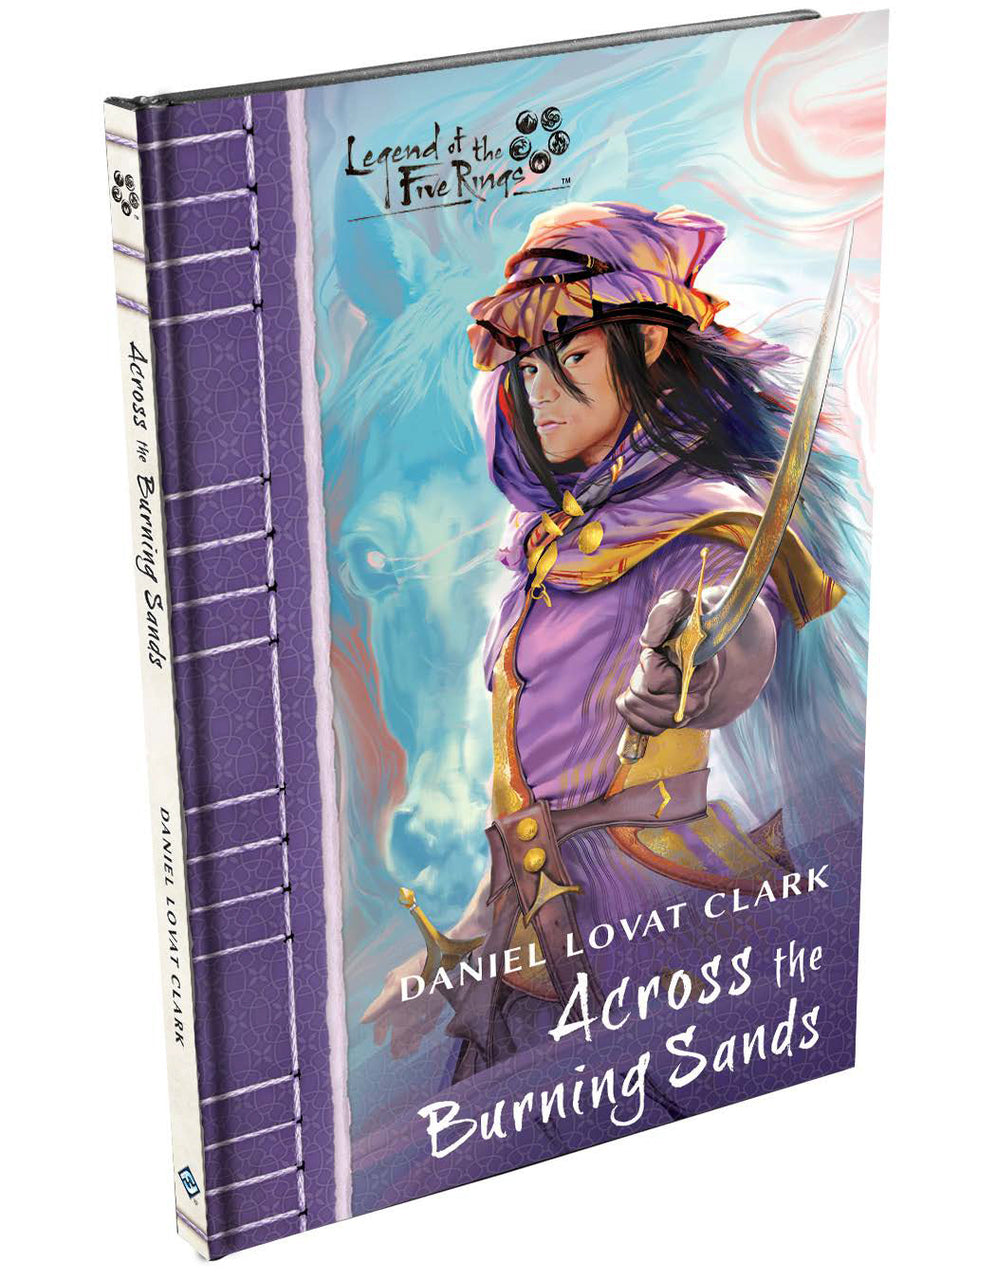 Across the Burning Sands novel